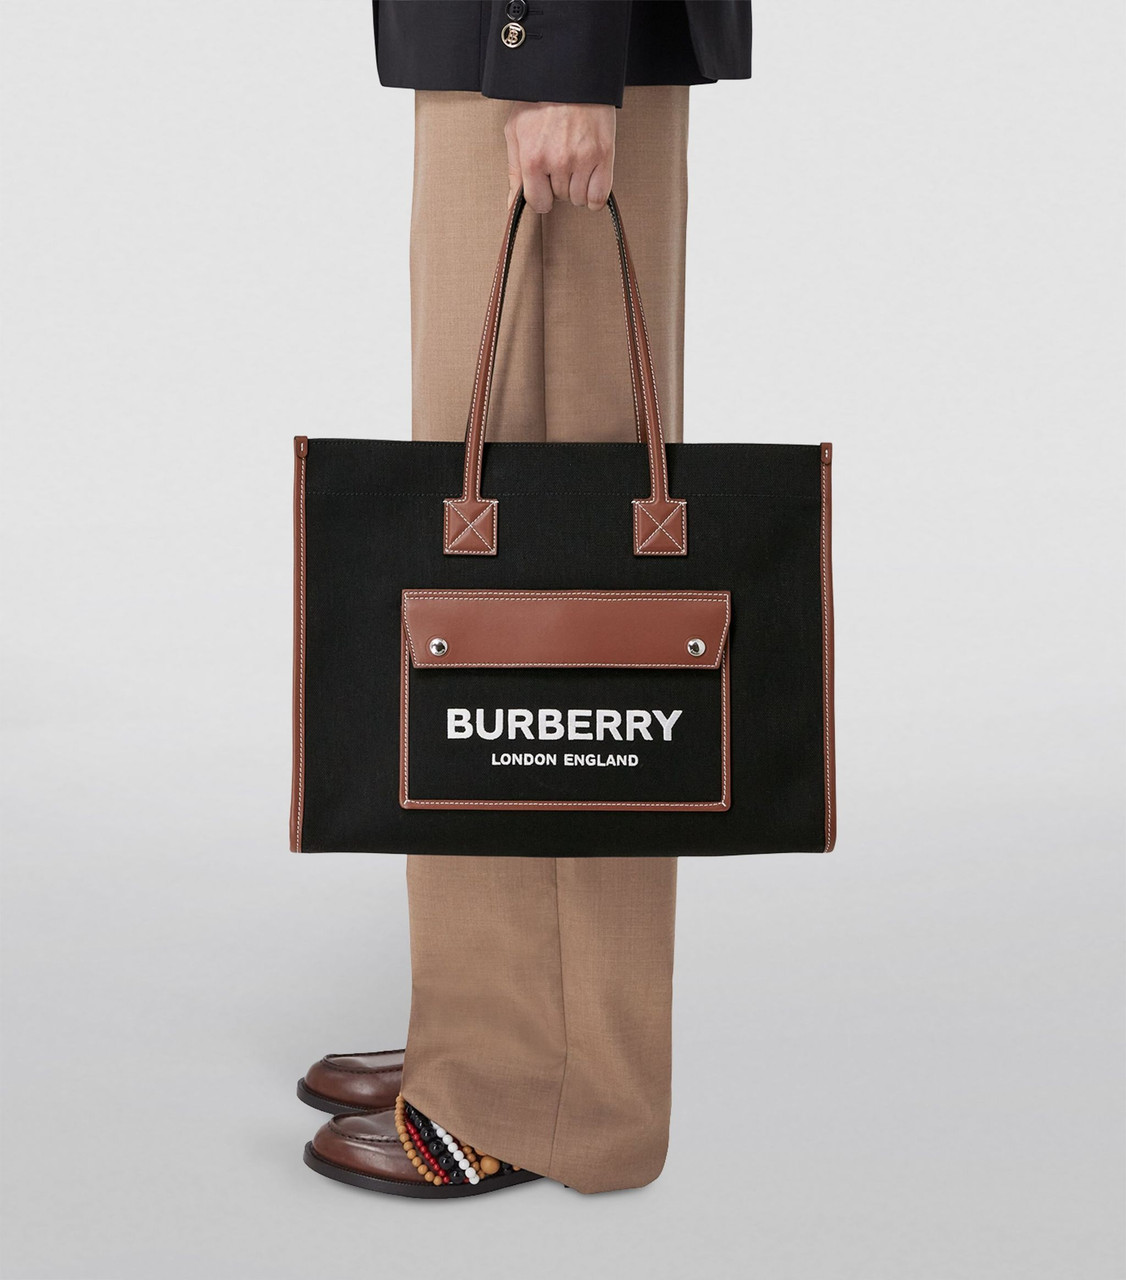 Burberry Freya - Tote bag for Woman - Beige - 8044138-A1395 | FRMODA.COM